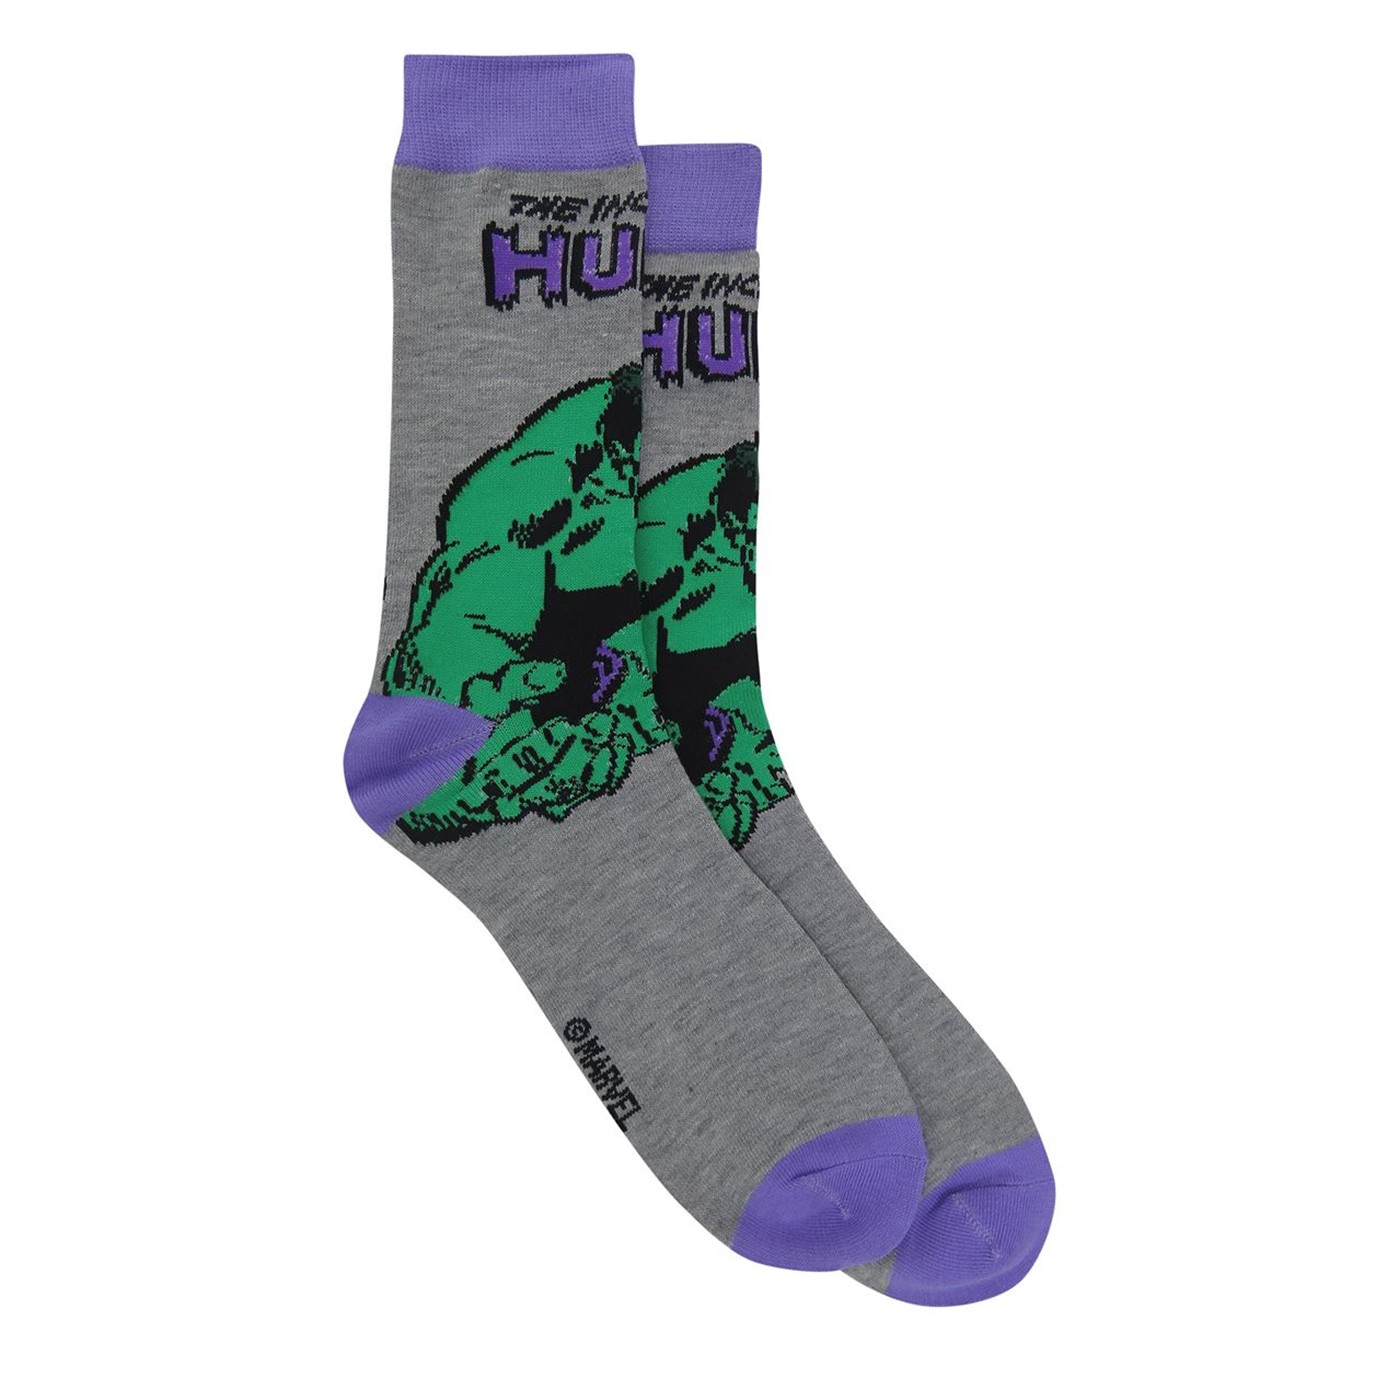 The Incredible Hulk Crew Socks 2-Pack